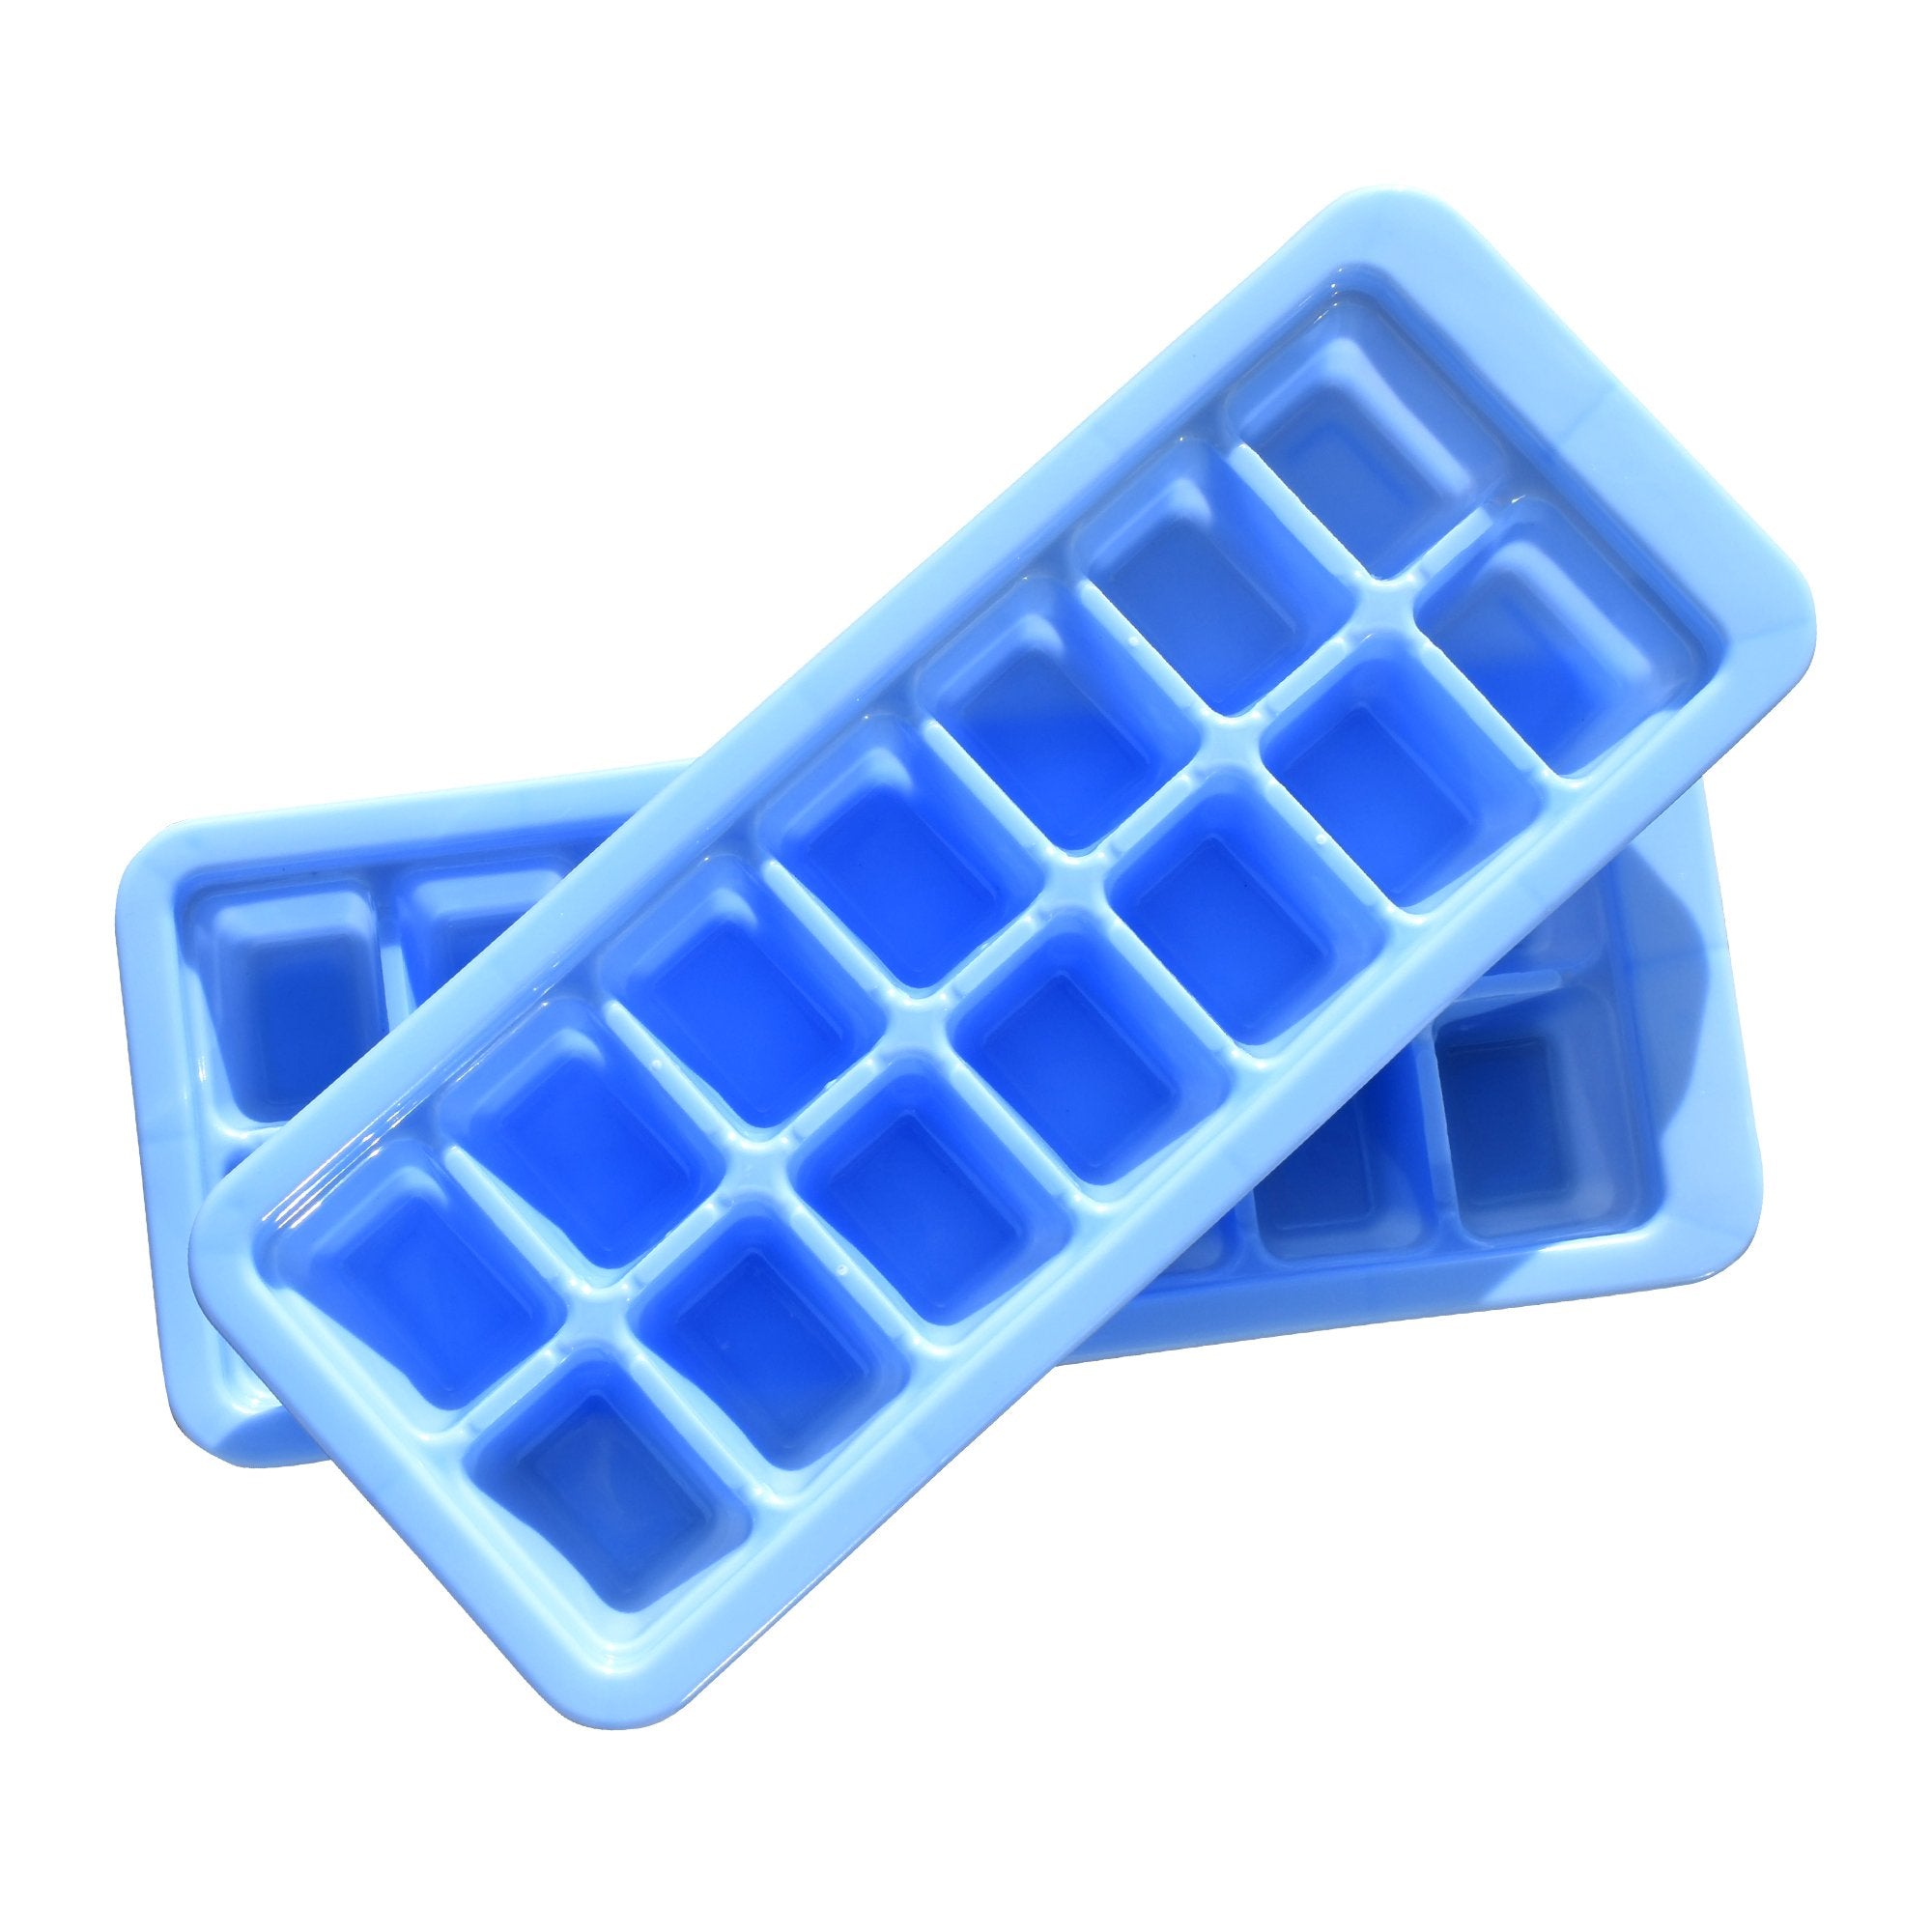 1196 Ice Cube Trays  14 Cavity Per Ice Tray [Multicolour] - SkyShopy